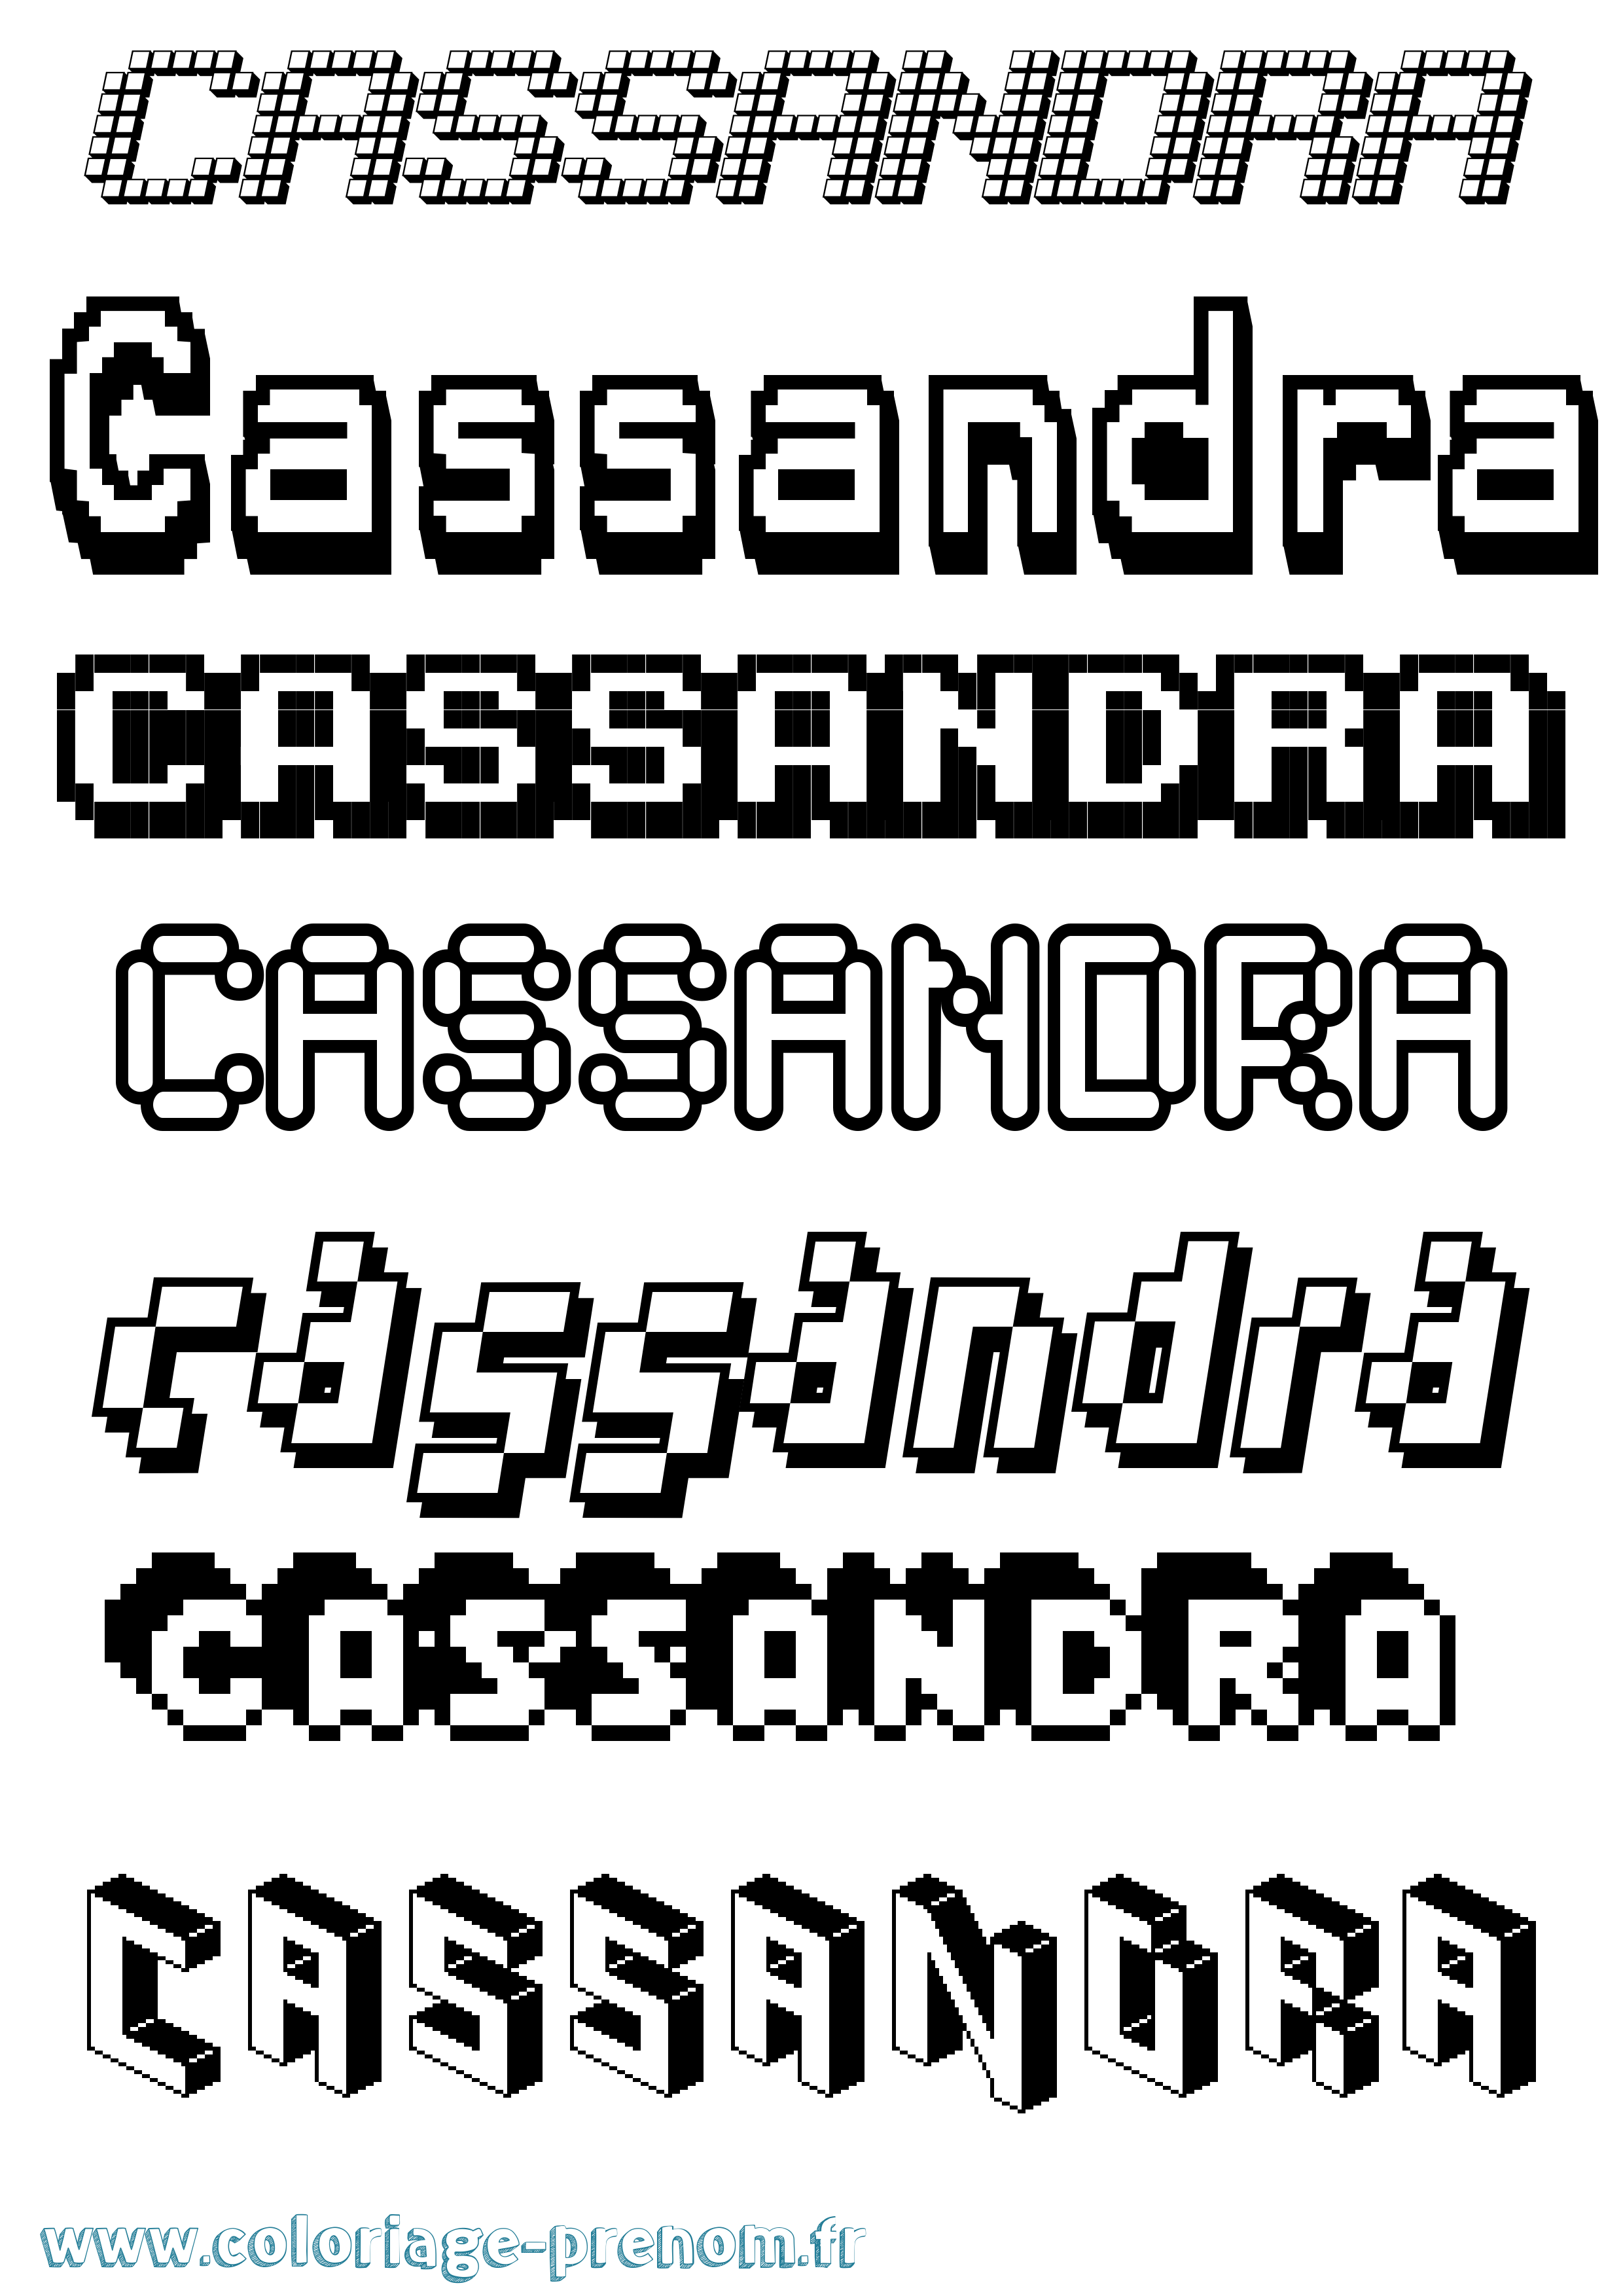 Coloriage prénom Cassandra